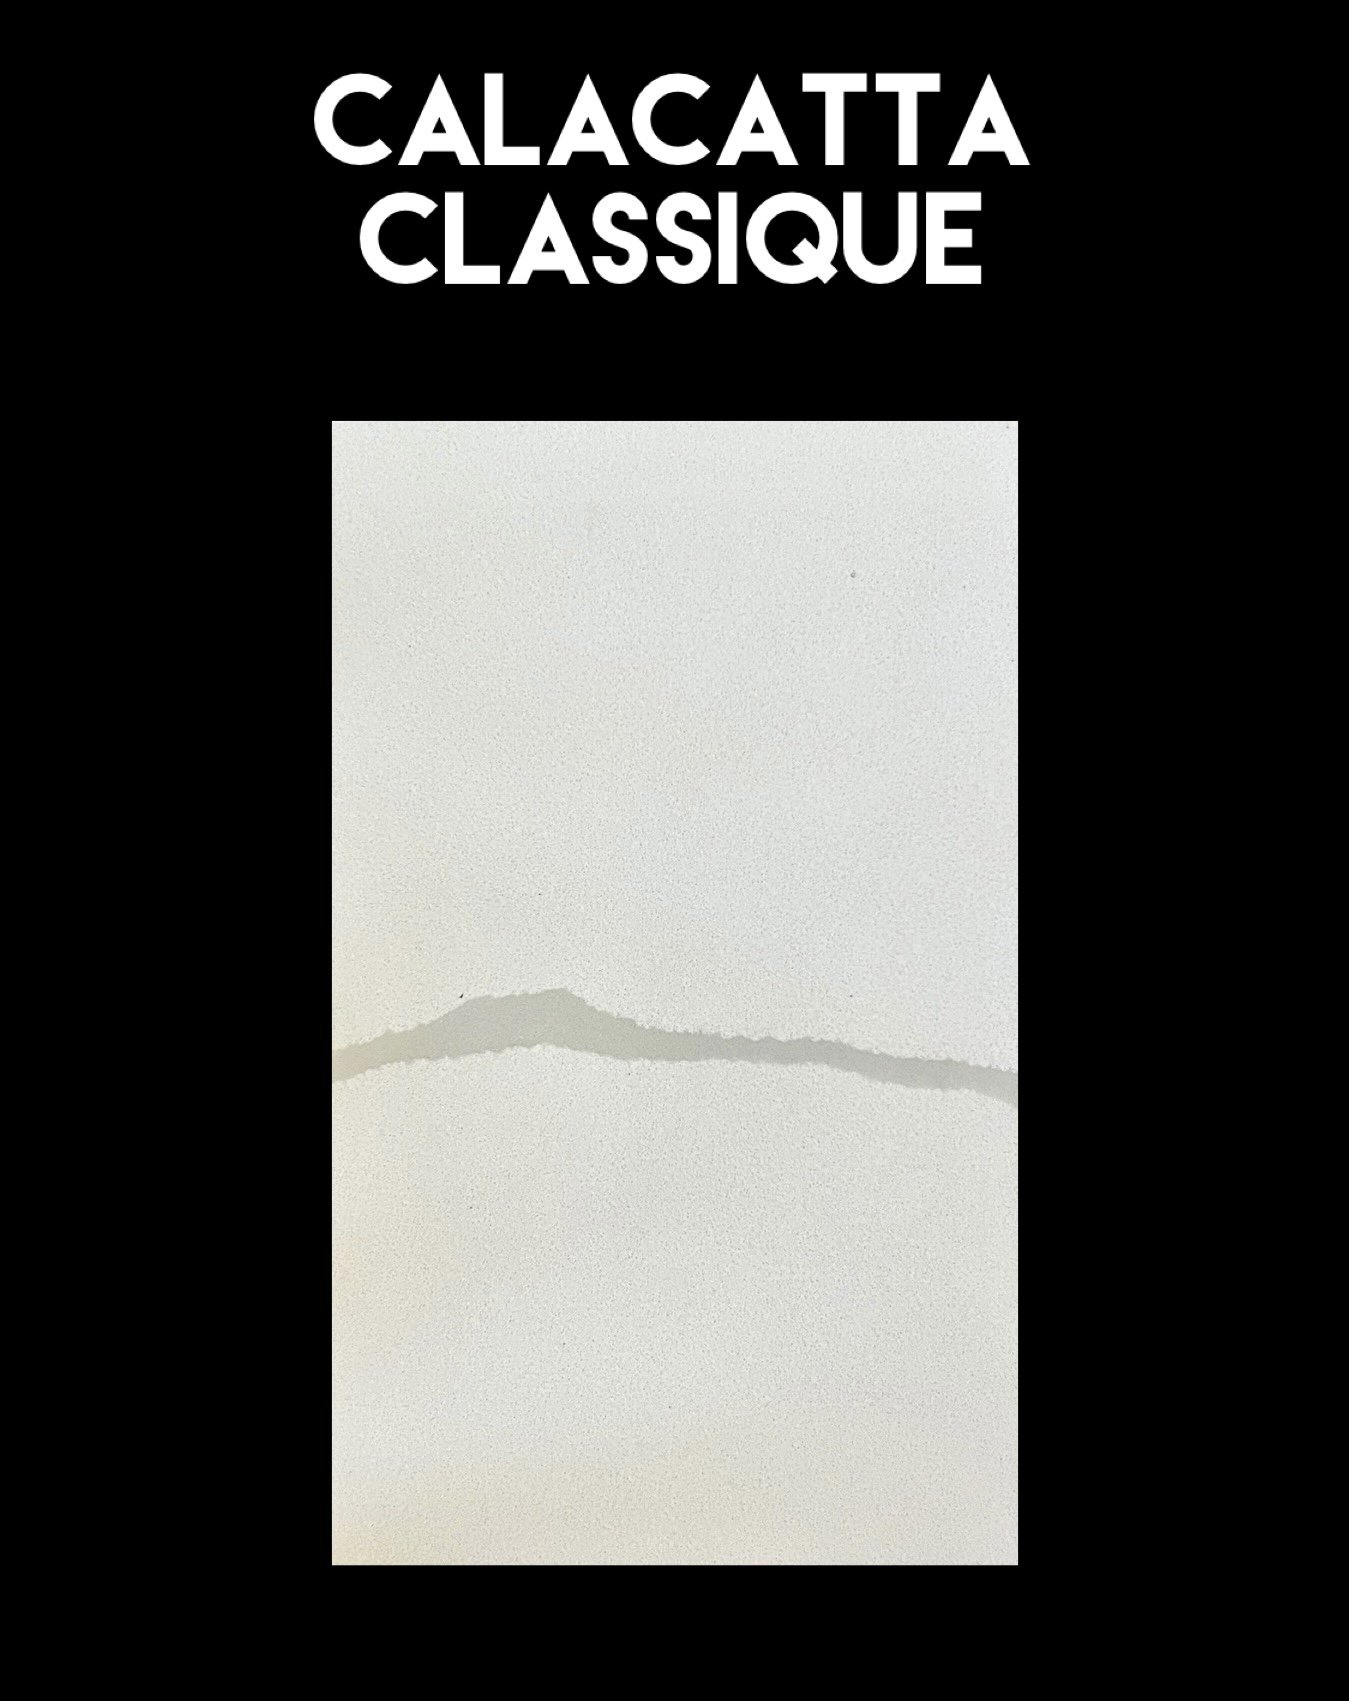 Calacatta Classique.jpg